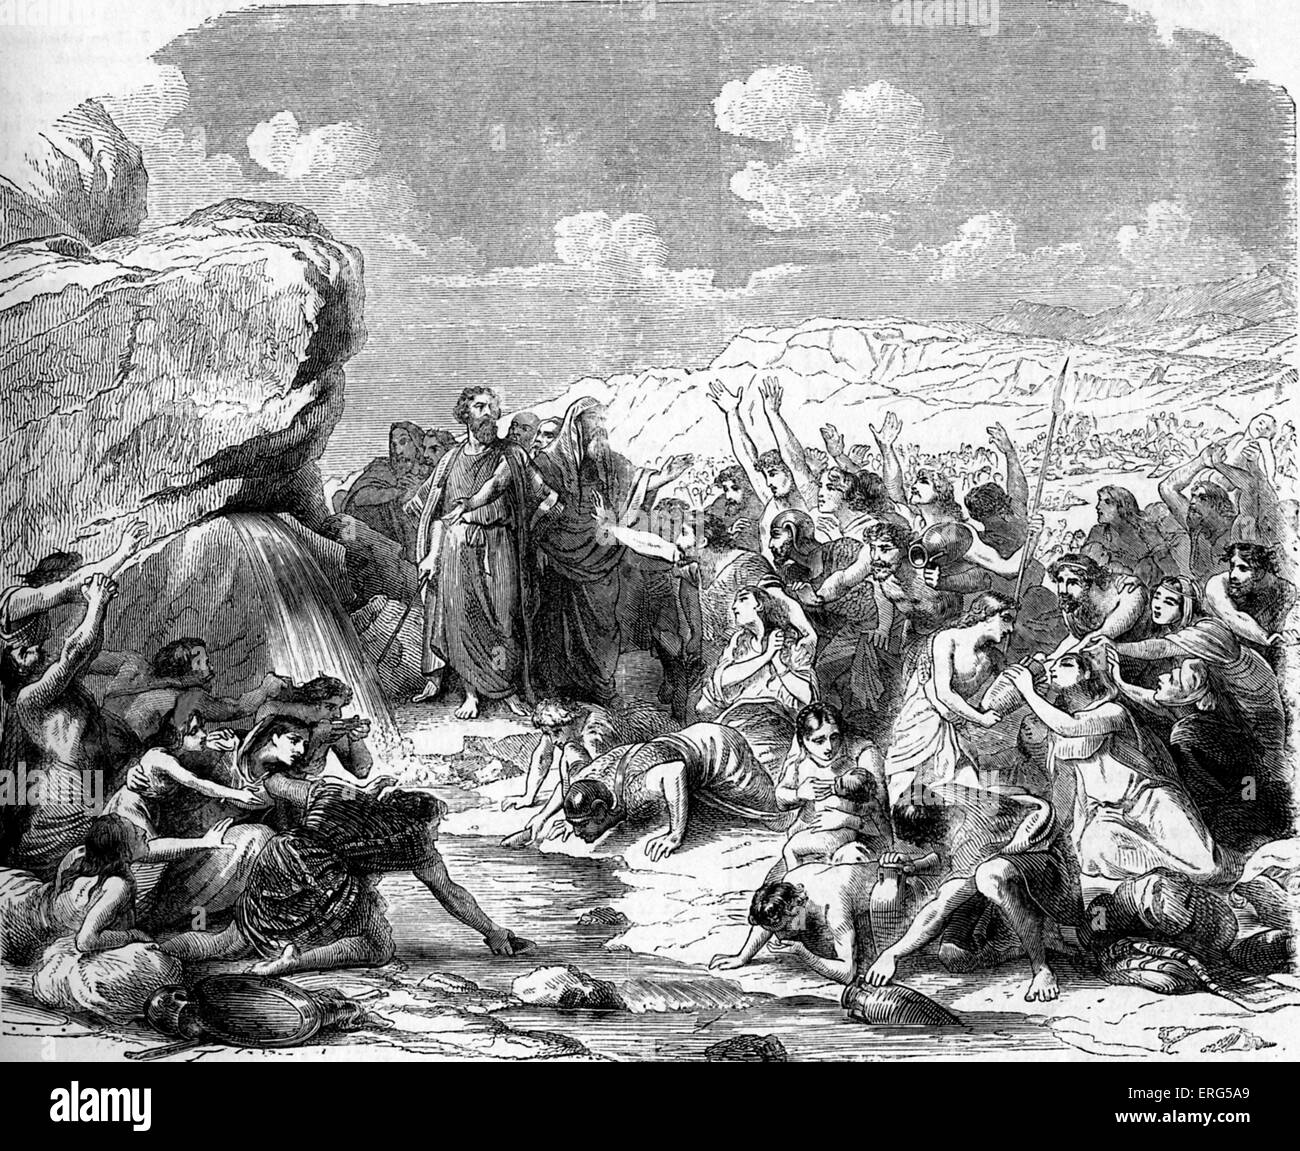 Moïse frappant le rocher pendant les errances de l'ex-esclaves hébreux dans le désert.. La Bible, Exode, XVII, verset 6 : ' Banque D'Images